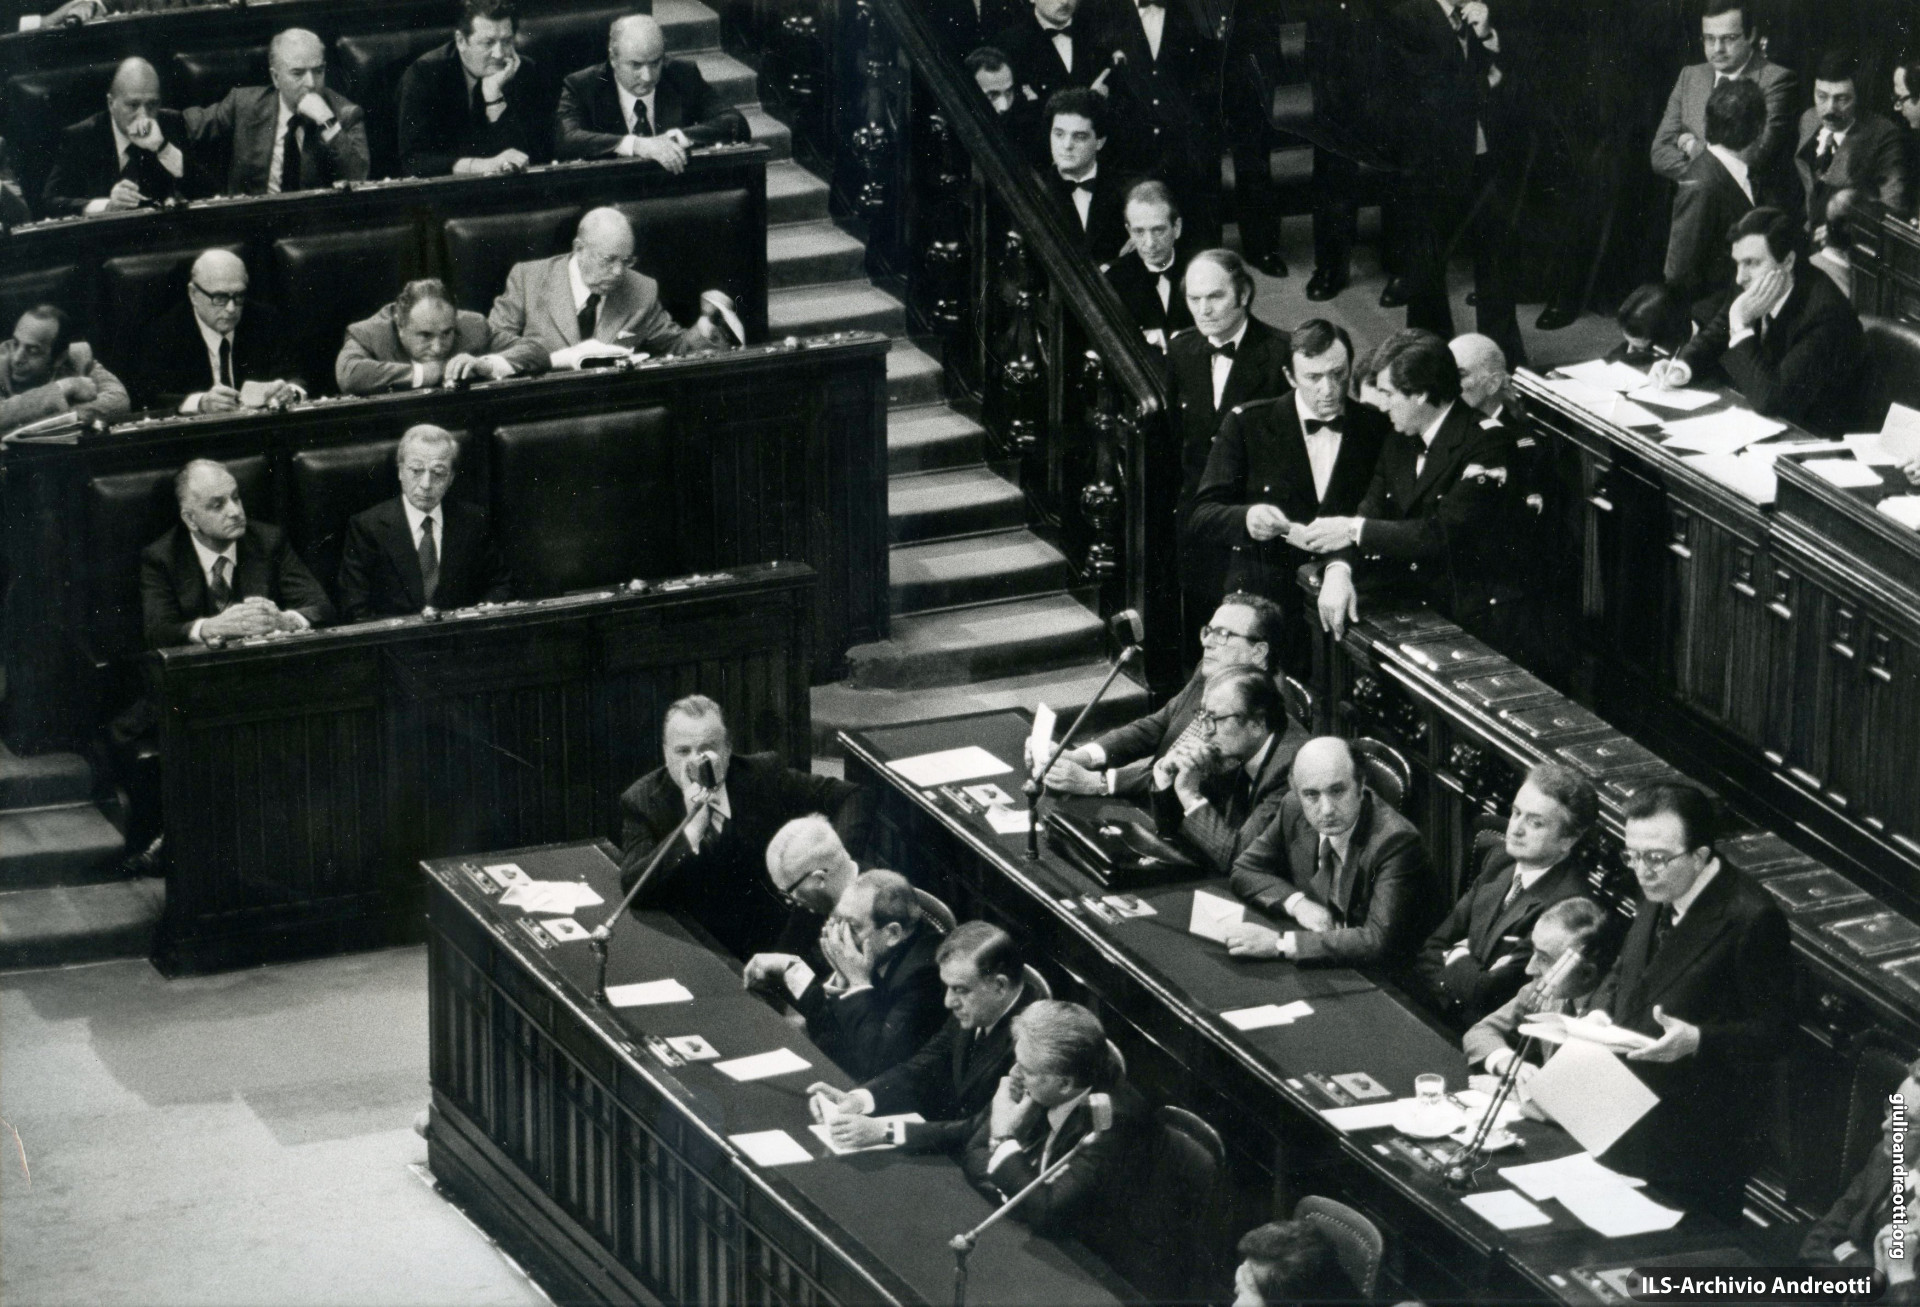 Presentazione del governo Andreotti IV alla Camera nel marzo 1978.